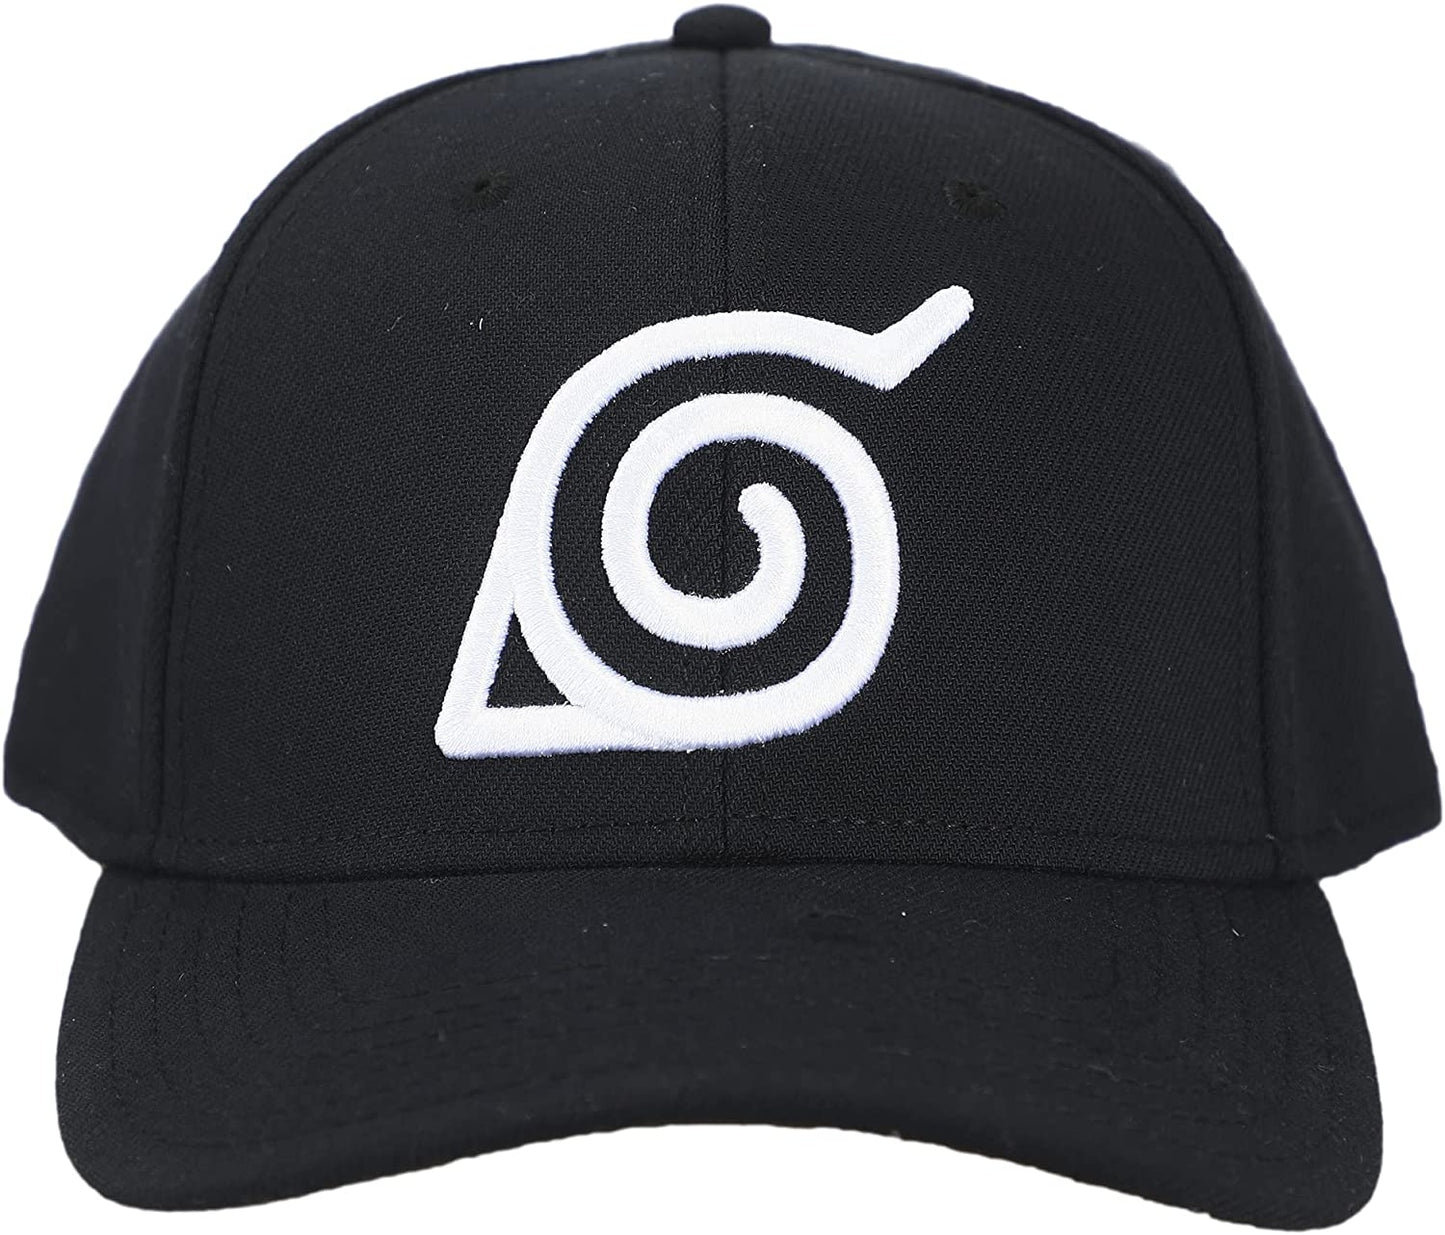 Naruto Hidden Leaf Village Clan Embroidered Adjustable Symbol Structured Twill Cap